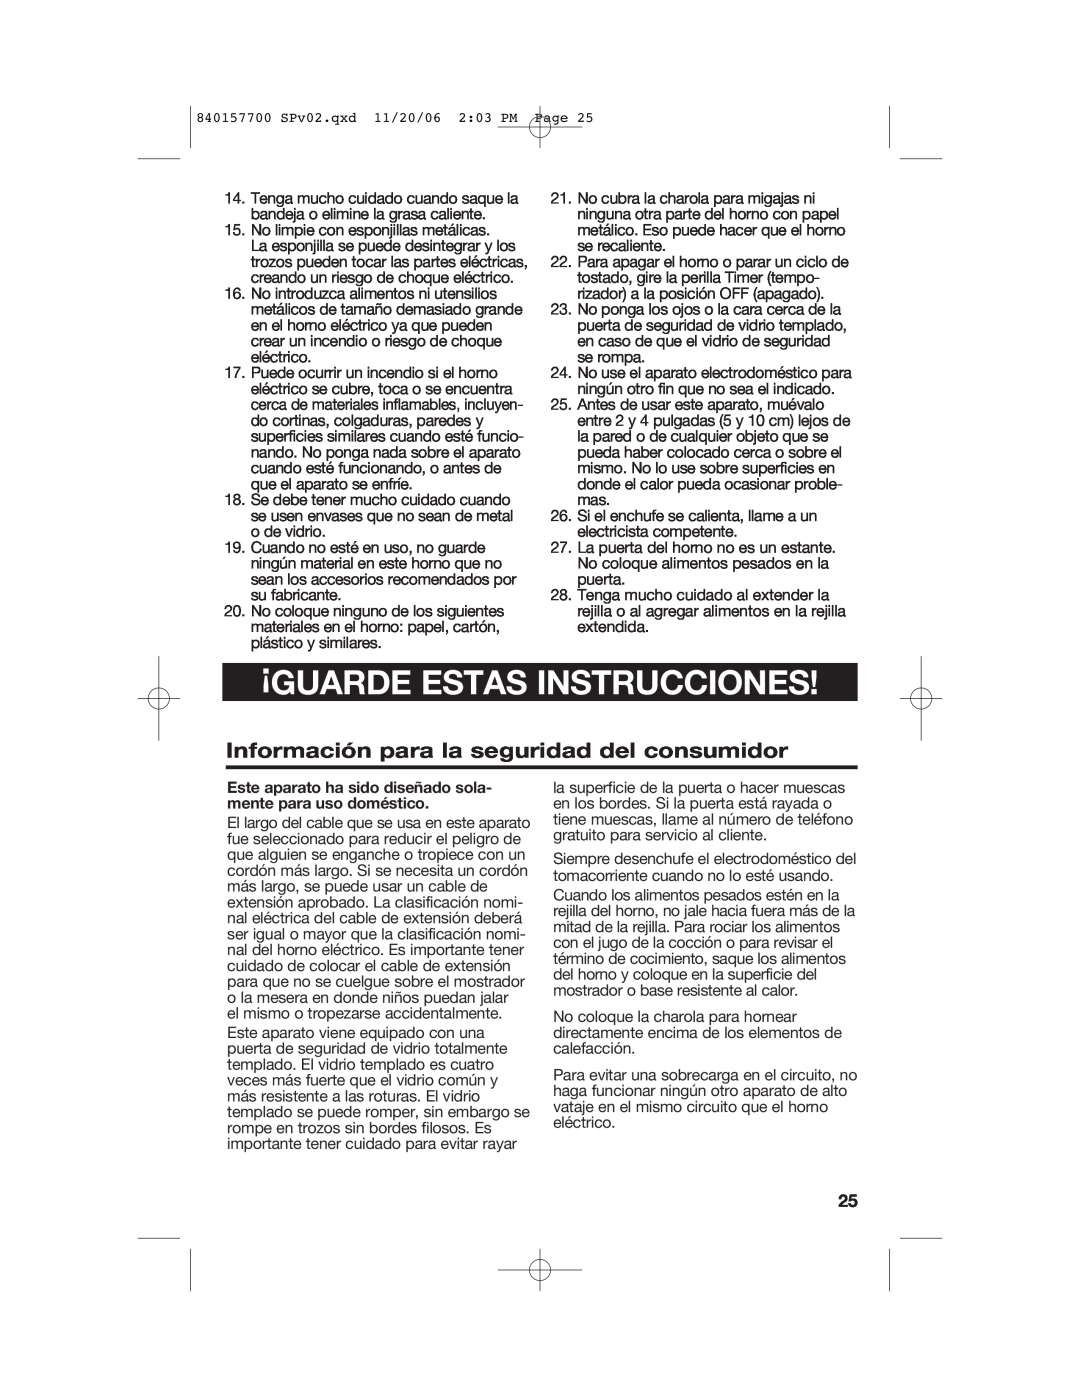 Hamilton Beach 31150C manual ¡Guarde Estas Instrucciones, Información para la seguridad del consumidor 